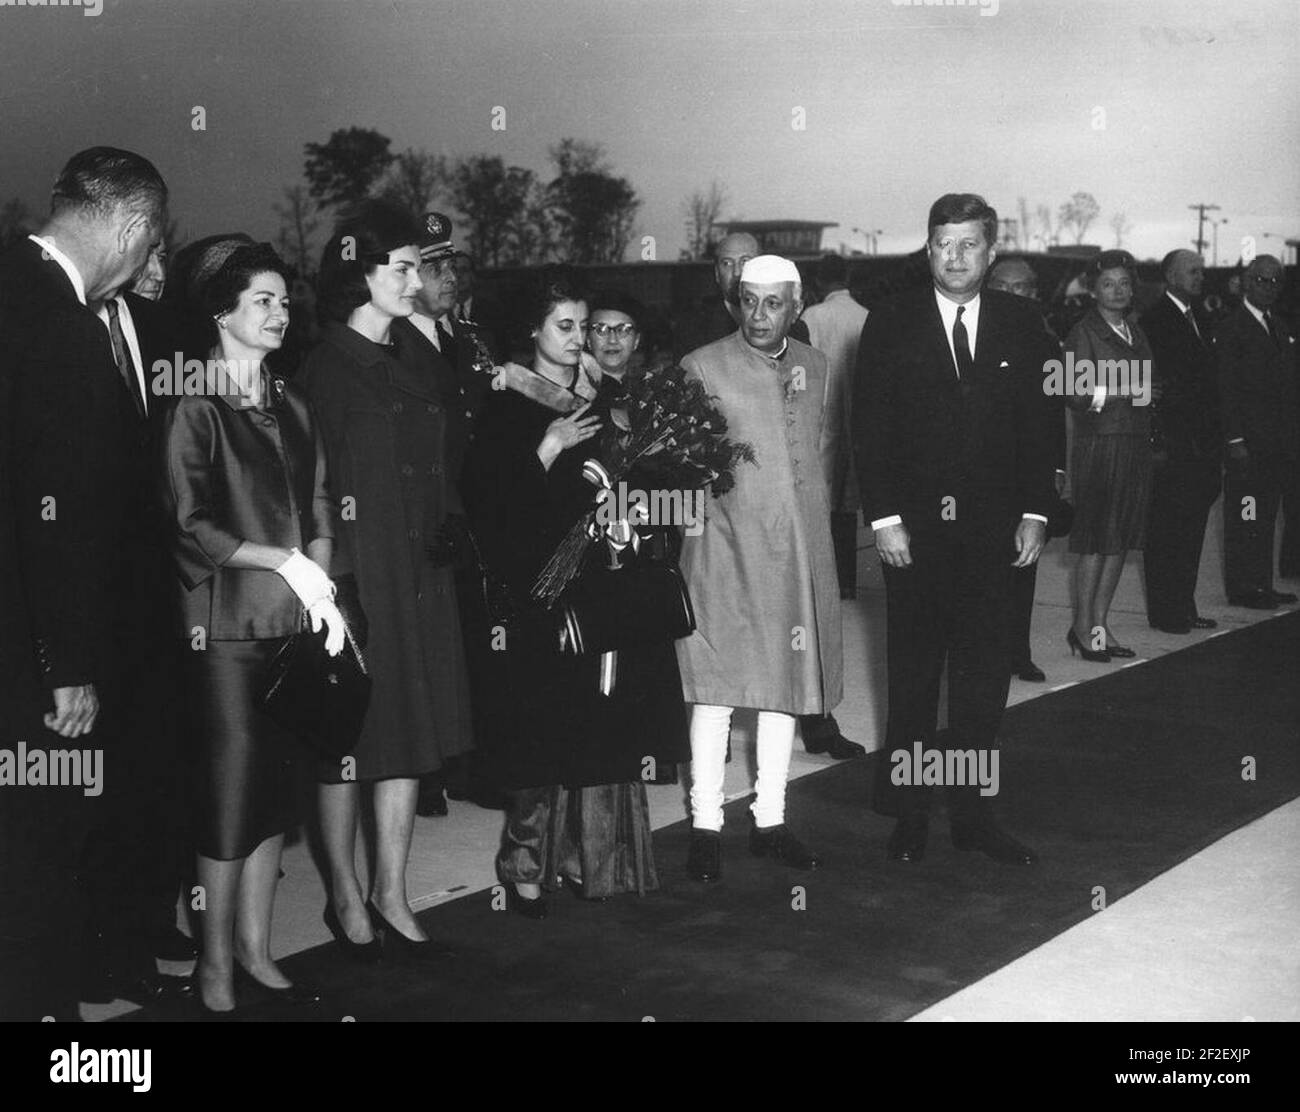 Präsident John F. Kennedy und andere bei der Ankunft Zeremonien für Jawaharlal Nehru, Premierminister von Indien. Stockfoto